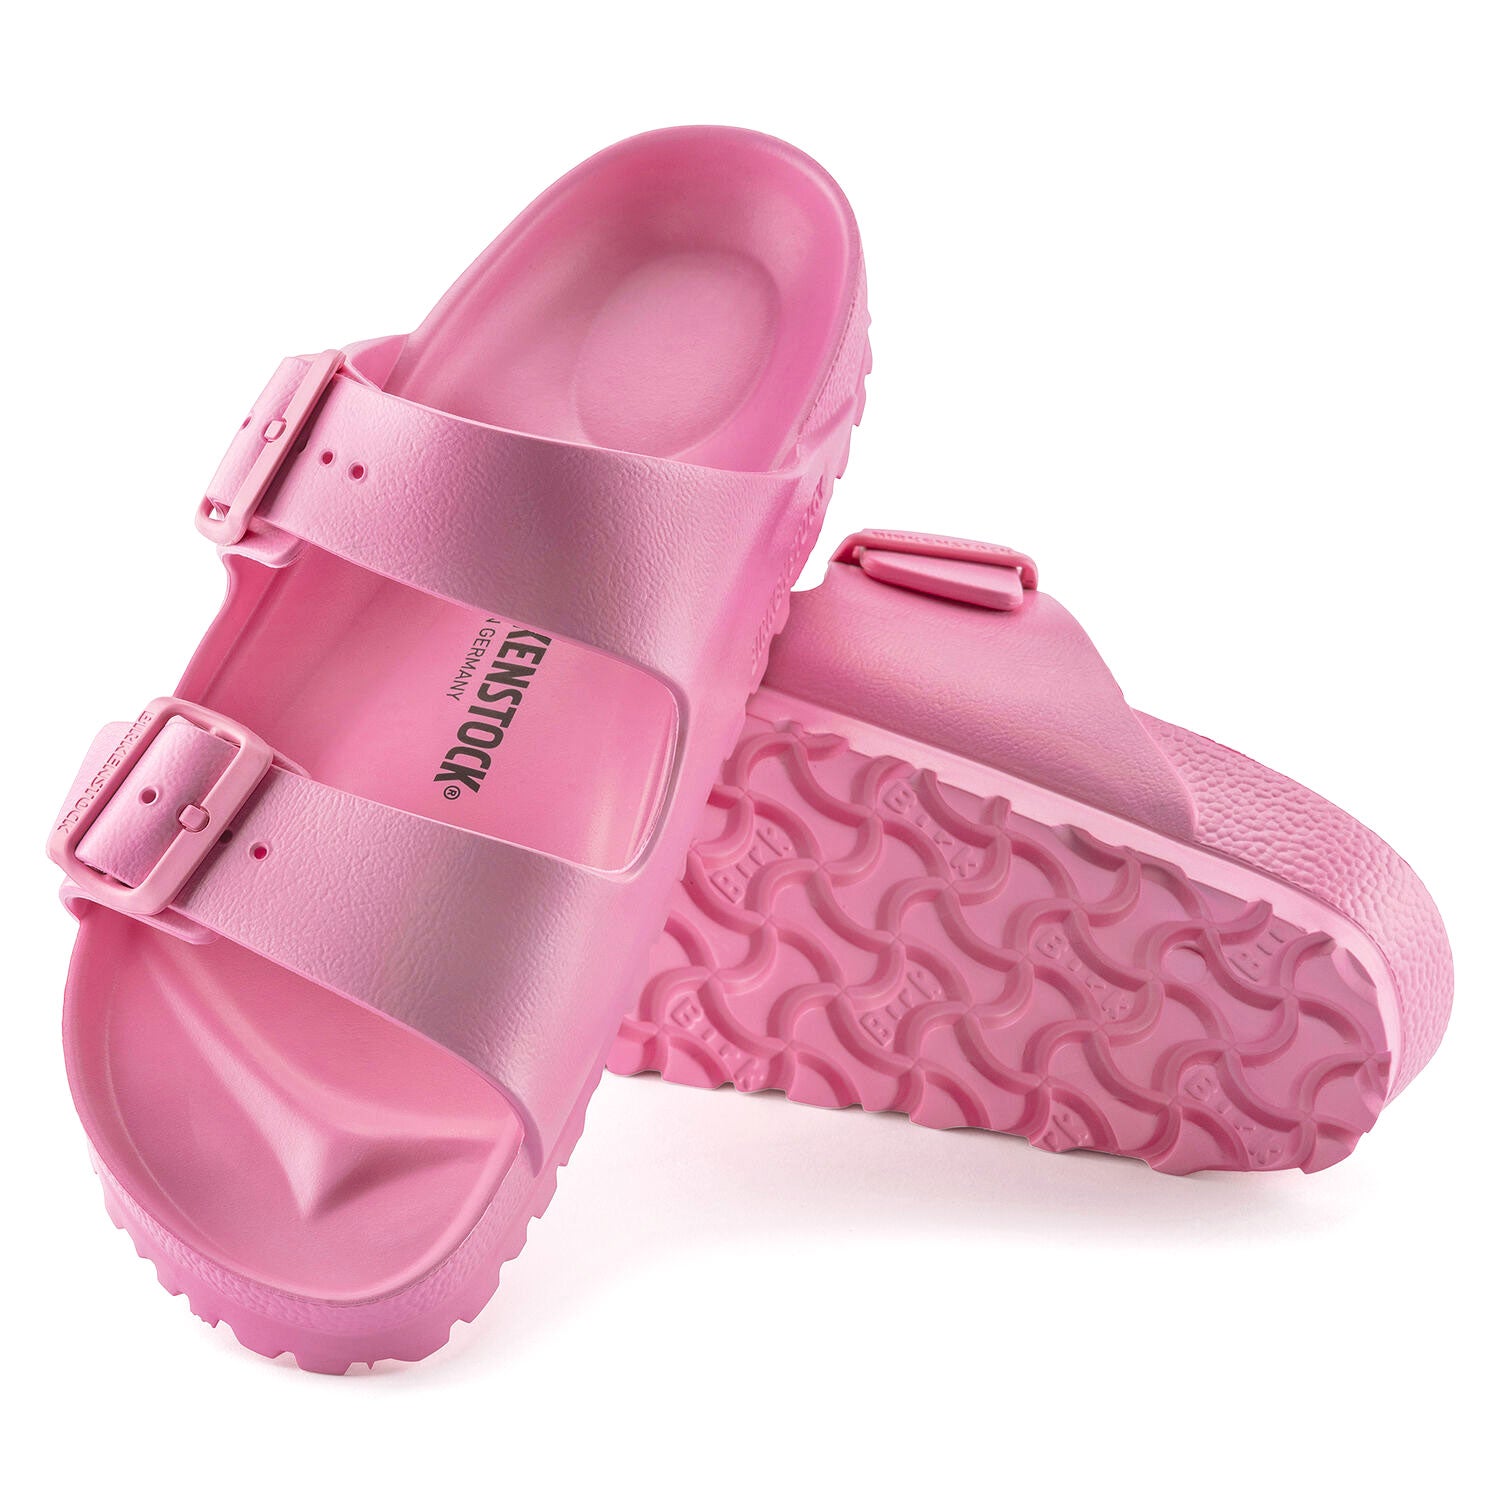 Birkenstock Arizona EVA Sandals - Candy Pink